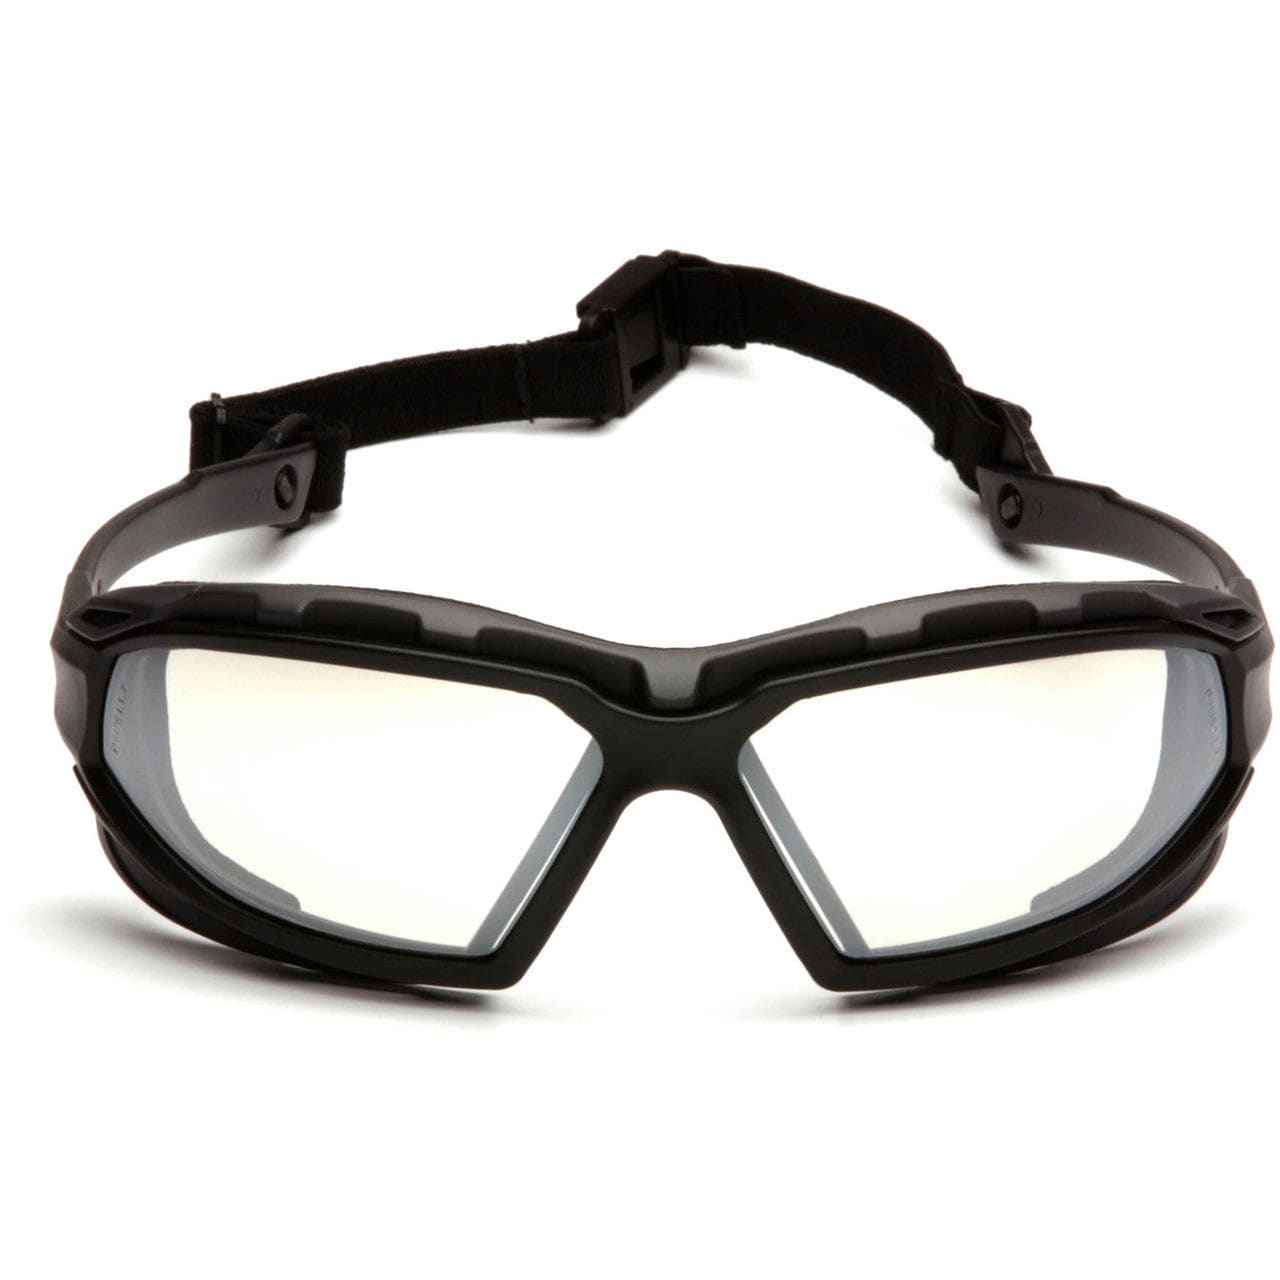 Pyramex Highlander Plus Safety Glasses Black Foam-Lined Frame Indoor/Outdoor Anti-Fog Lens SBG5080DT Front